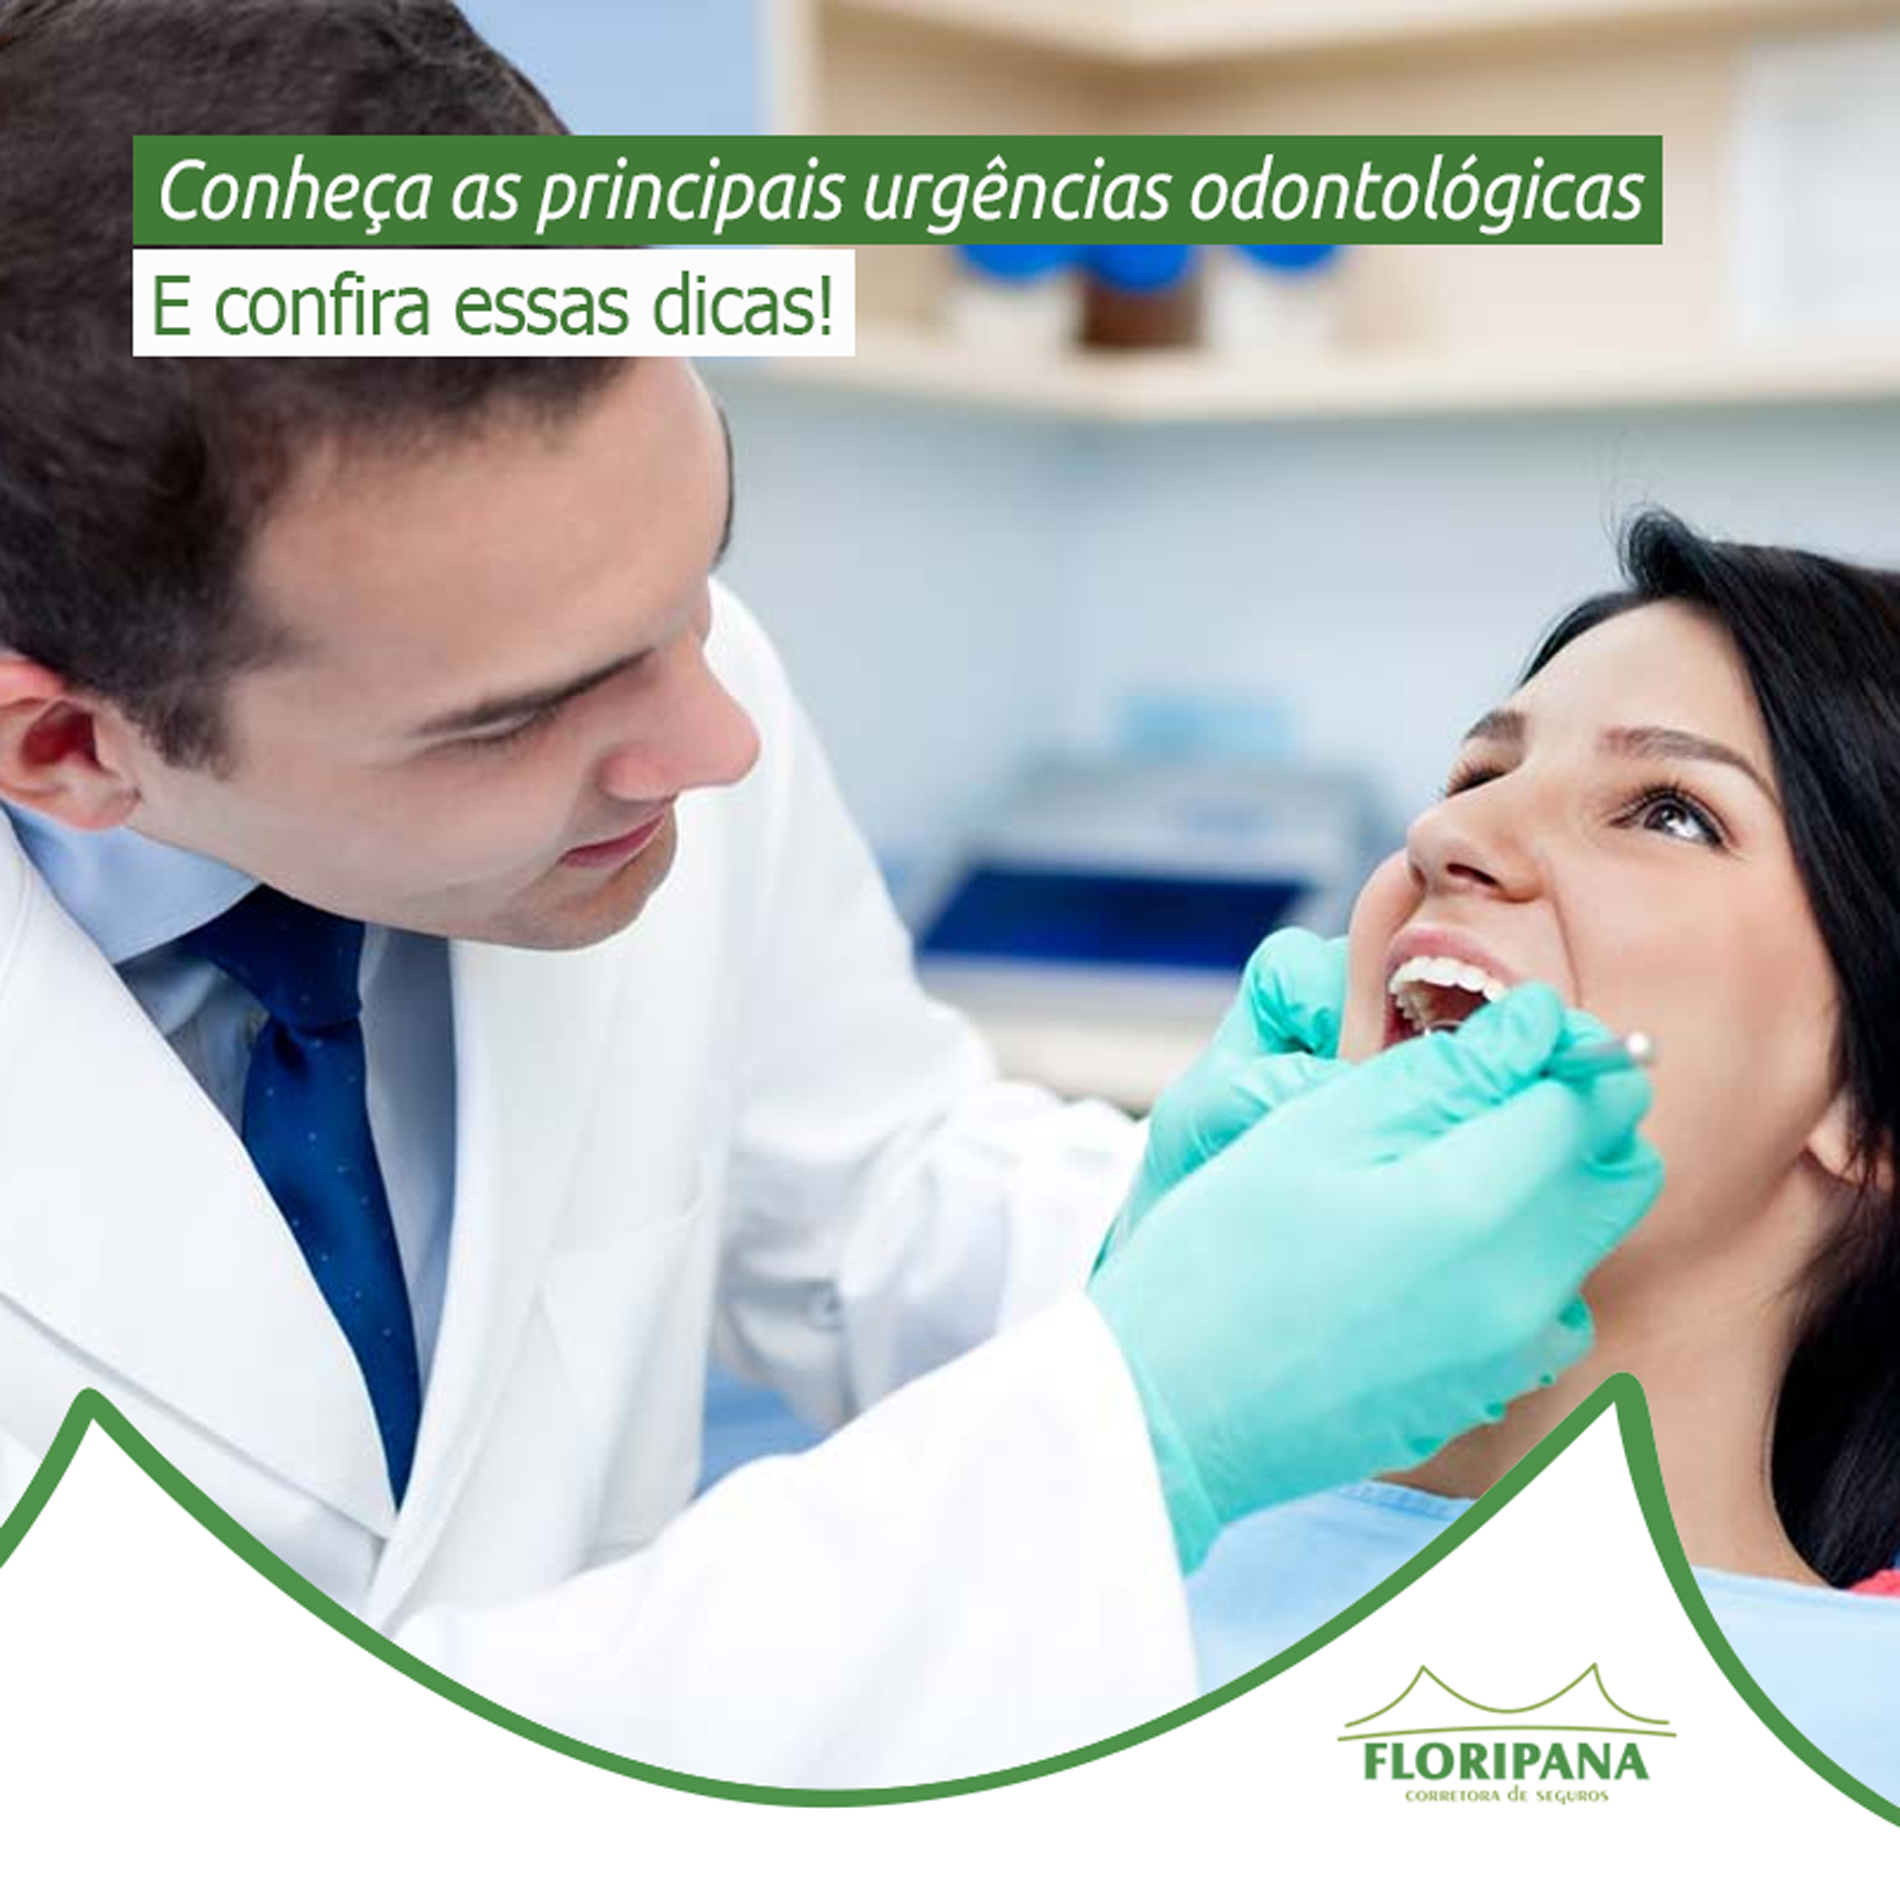 Conheça as principais urgências odontológicas!